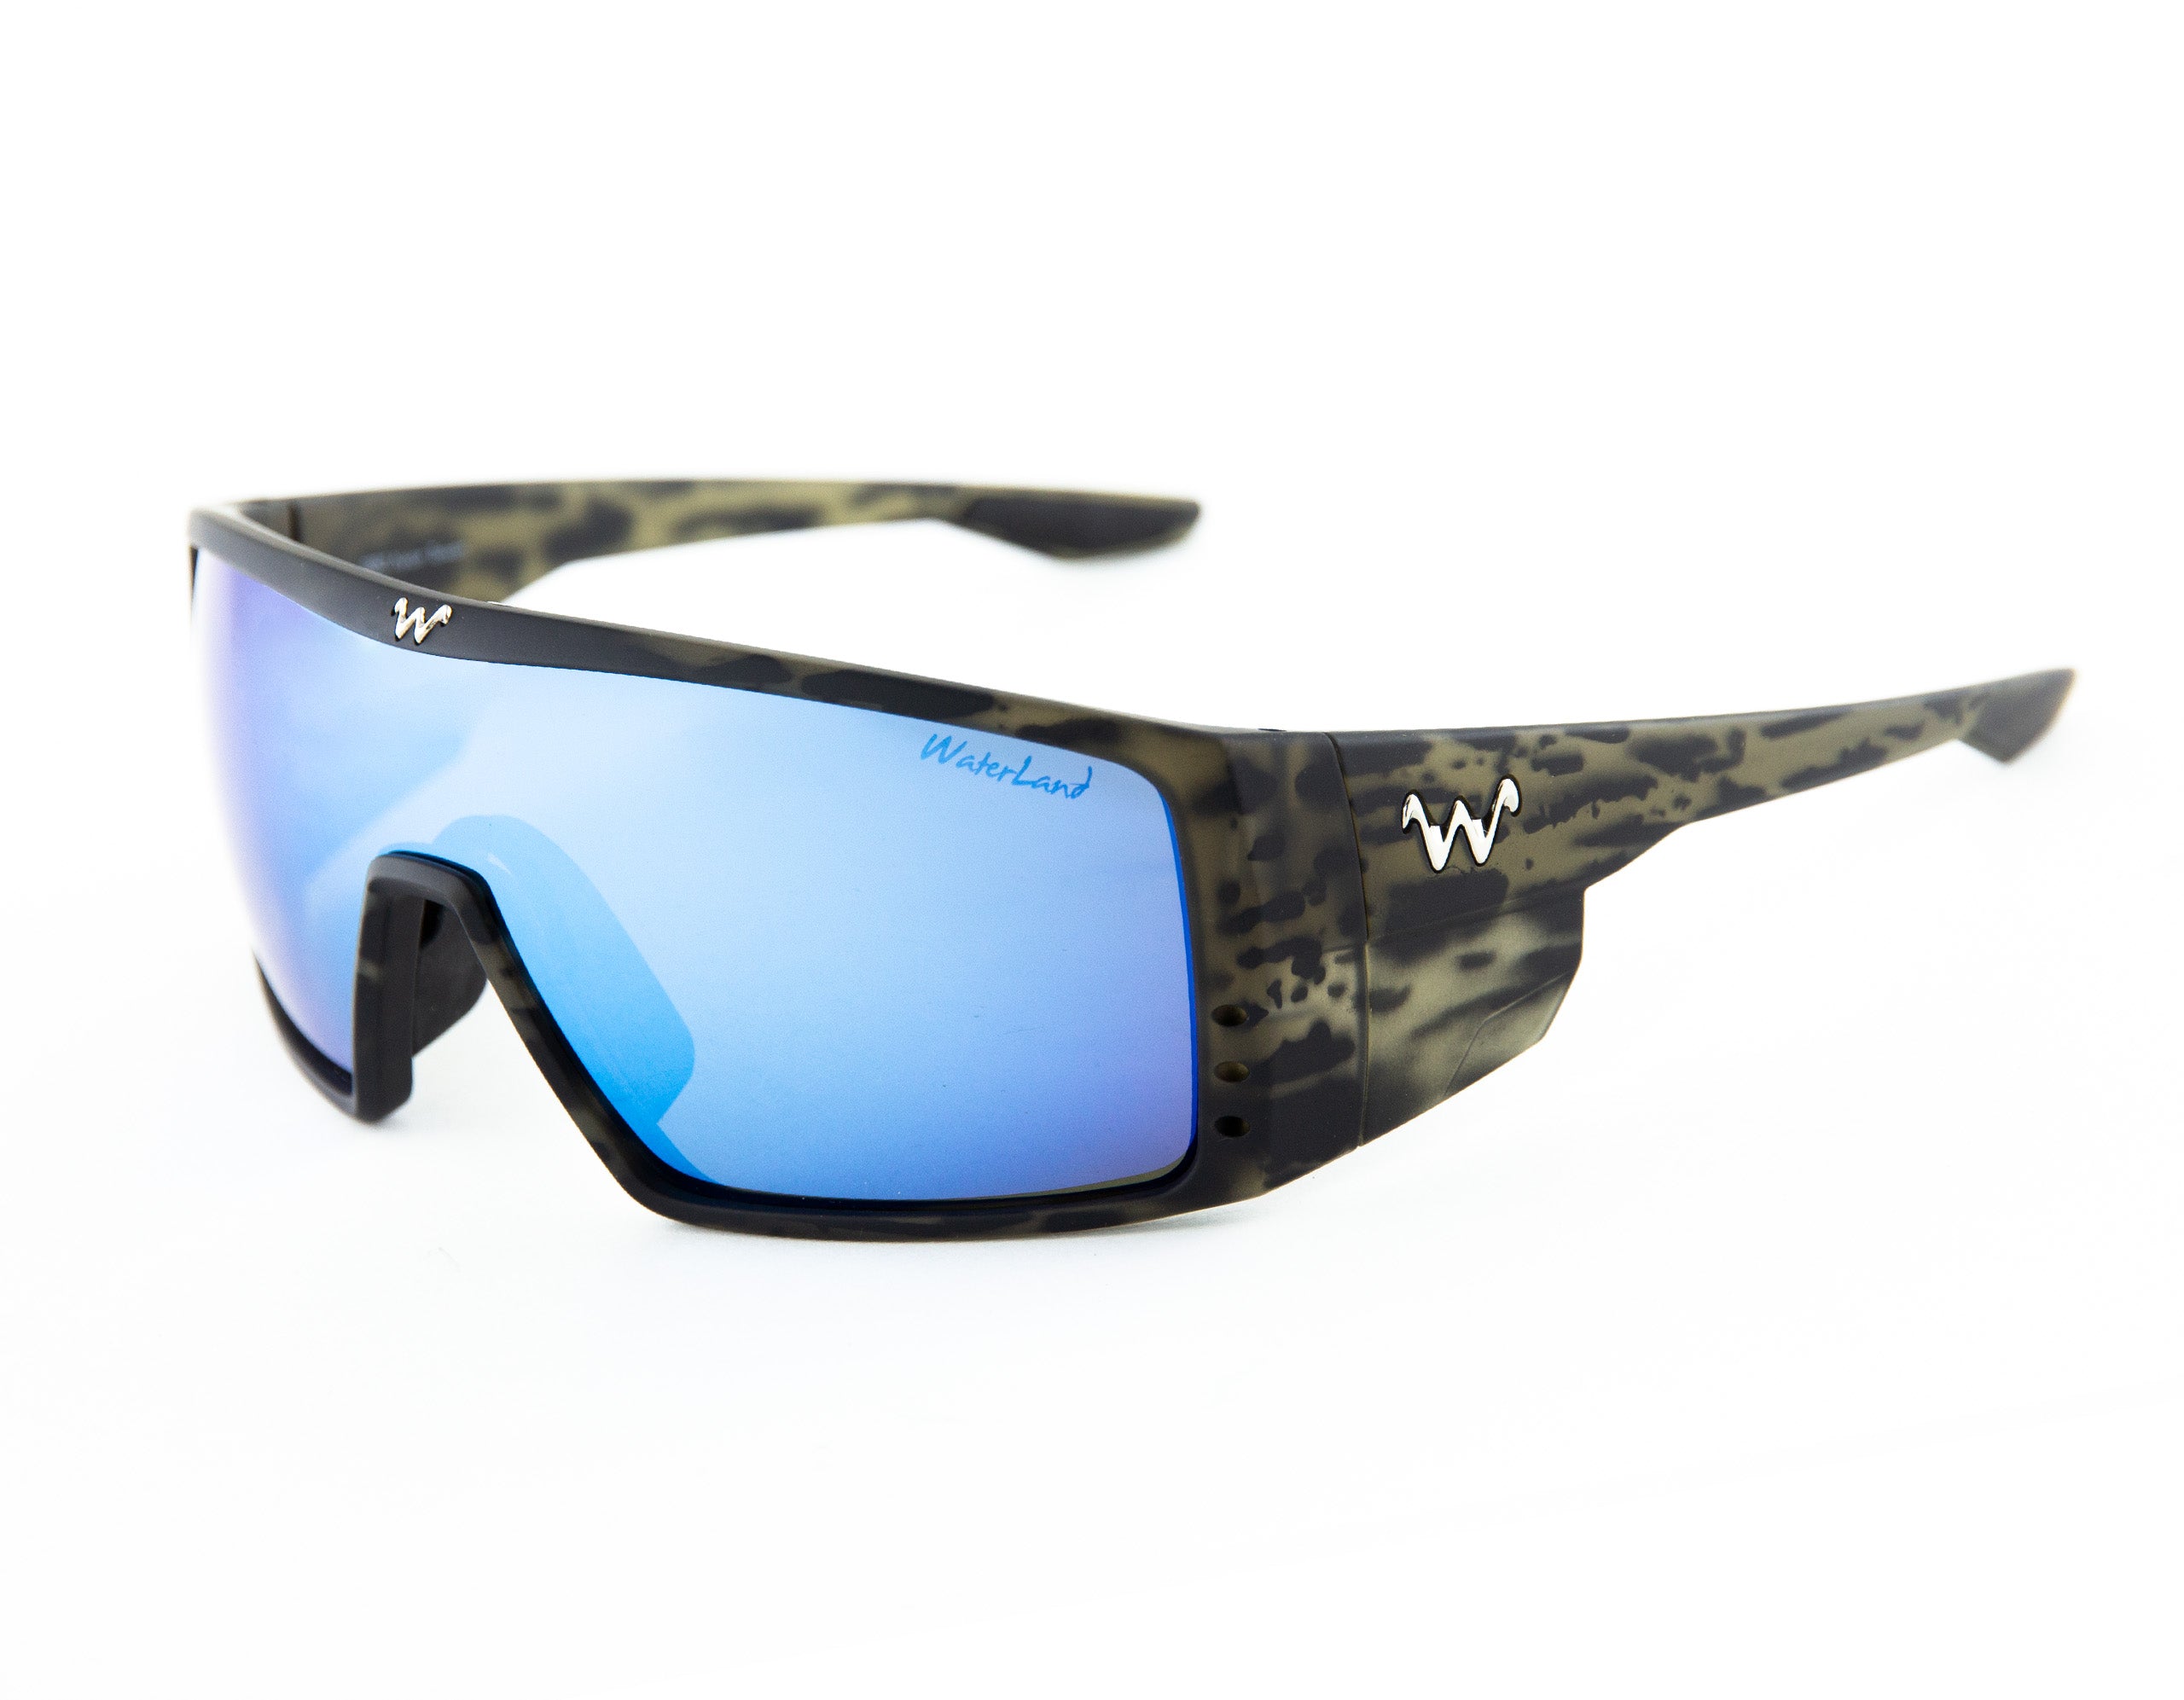 WaterLand Fishing Sunglasses - BedFishers Series